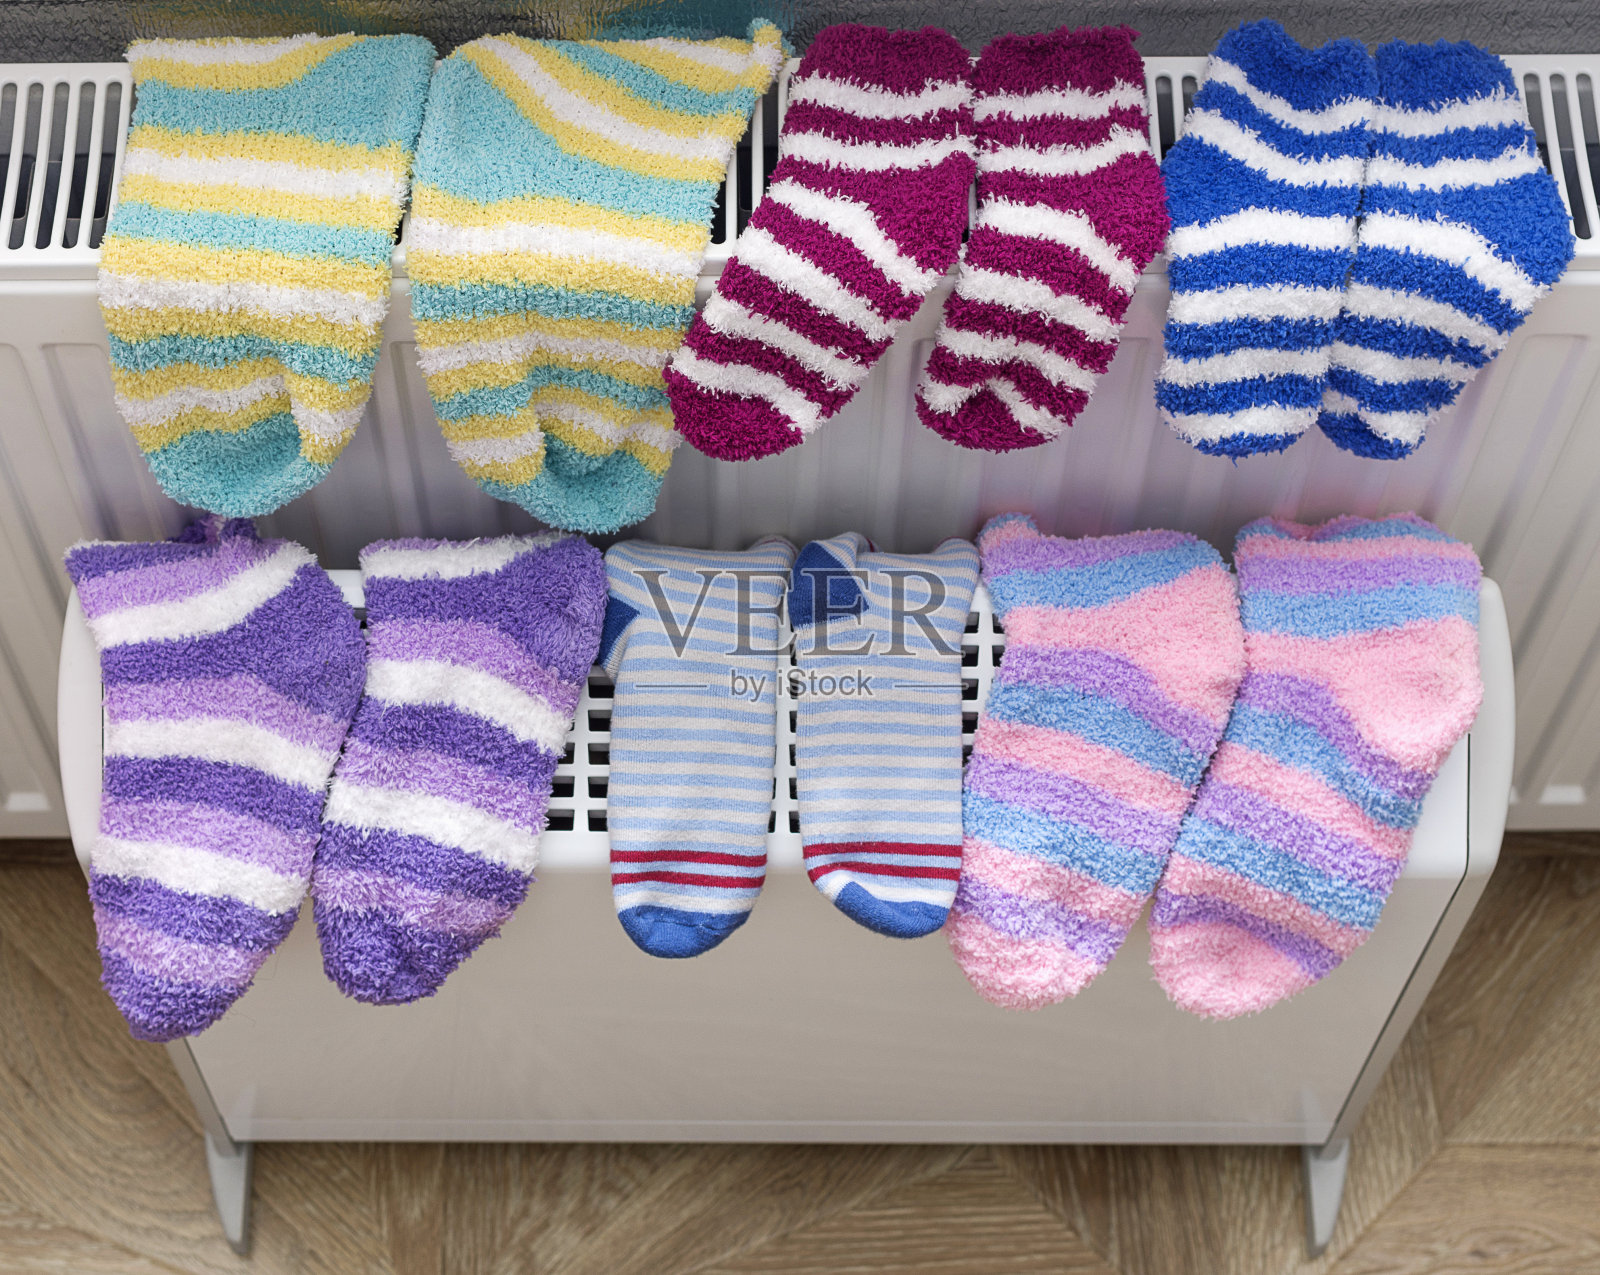 温暖的毛巾袜在加热散热器和电加热散热器在家里干燥。照片摄影图片